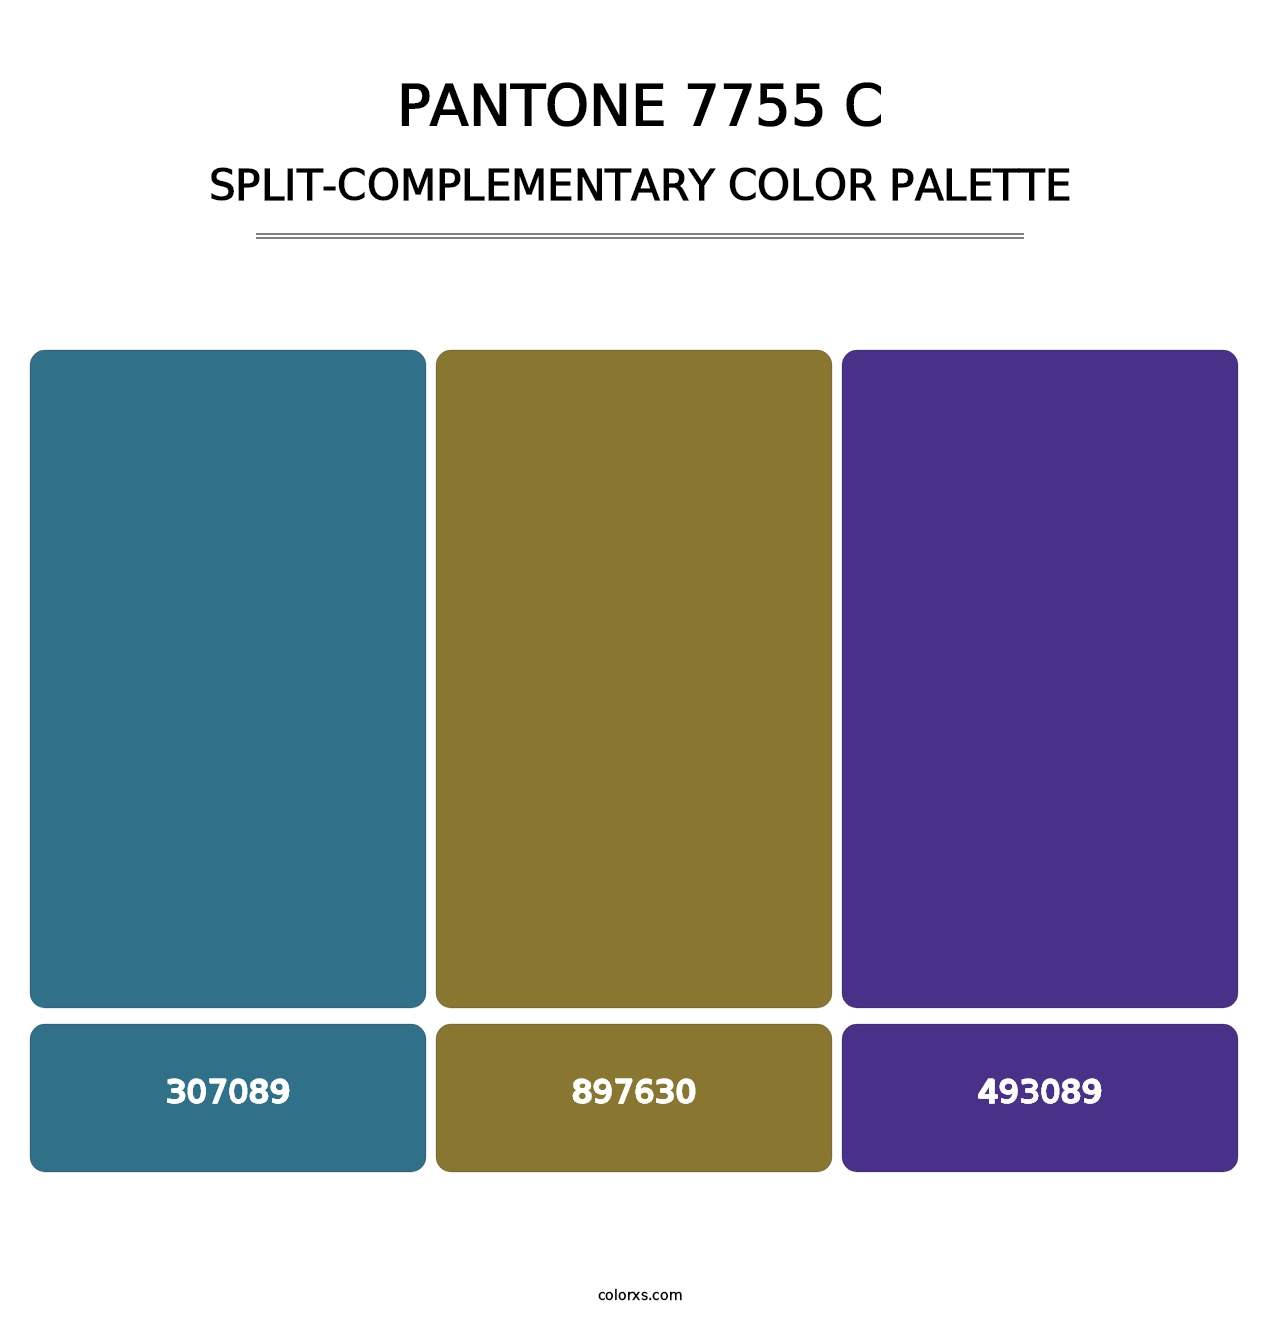 PANTONE 7755 C - Split-Complementary Color Palette